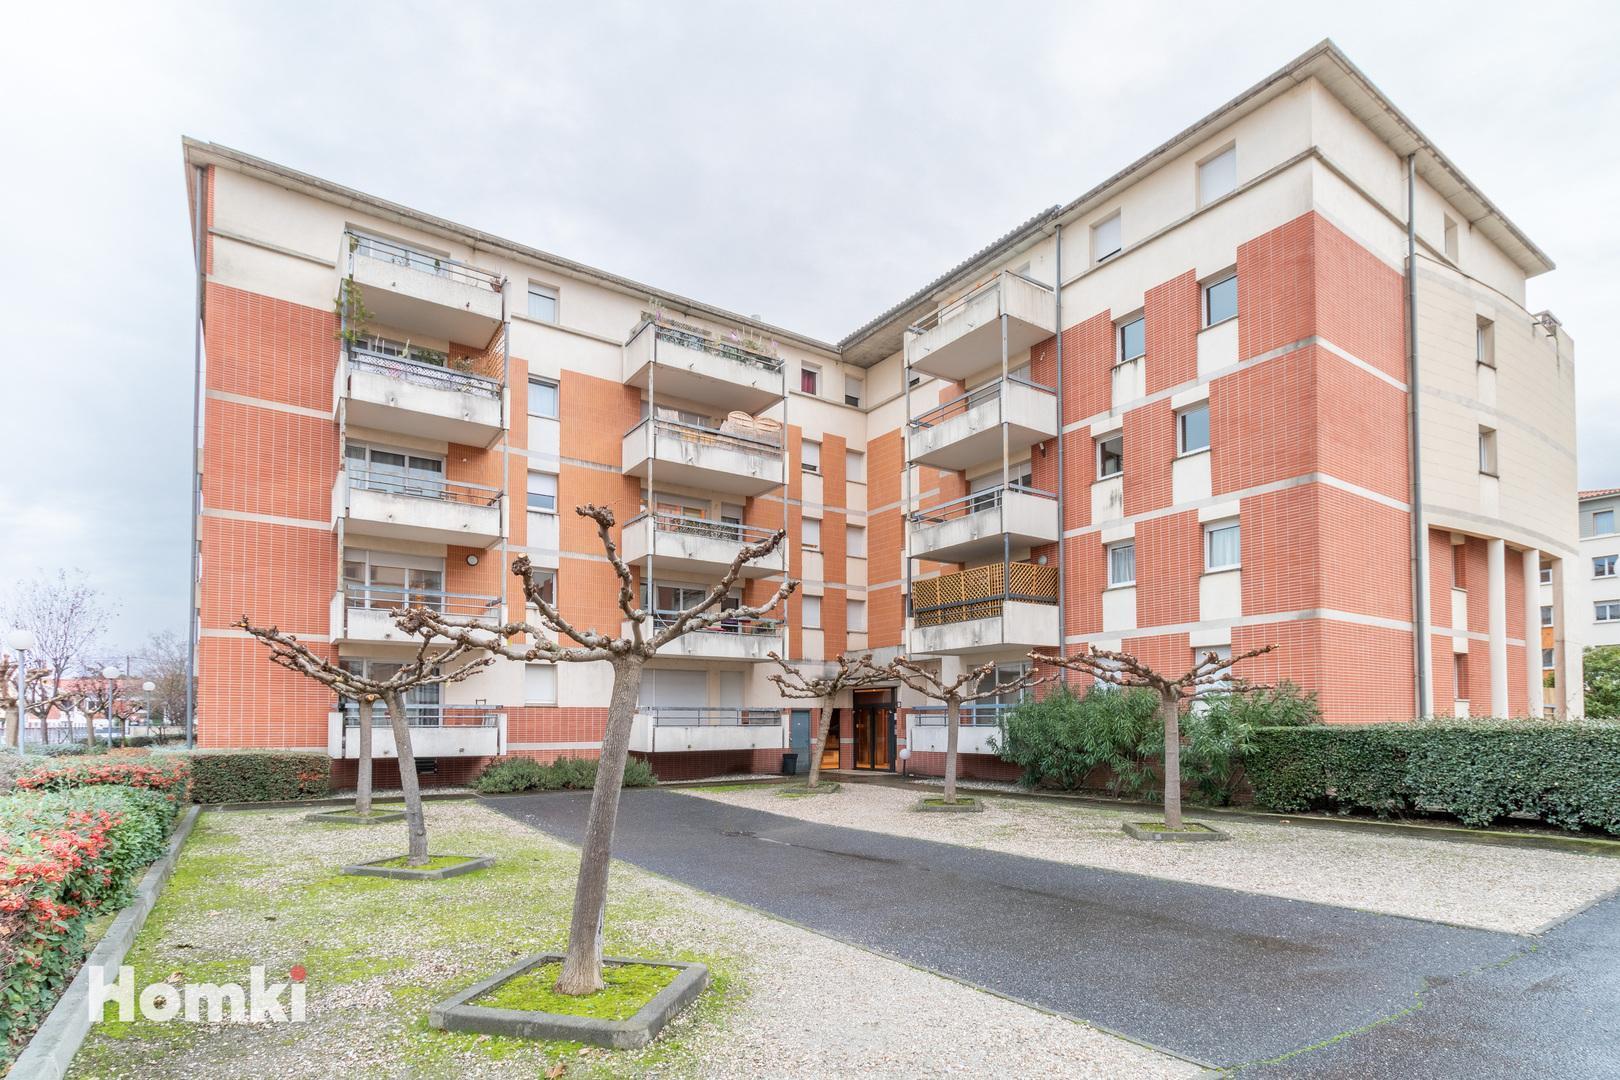 Homki - Vente Appartement  de 65.0 m² à Toulouse 31200